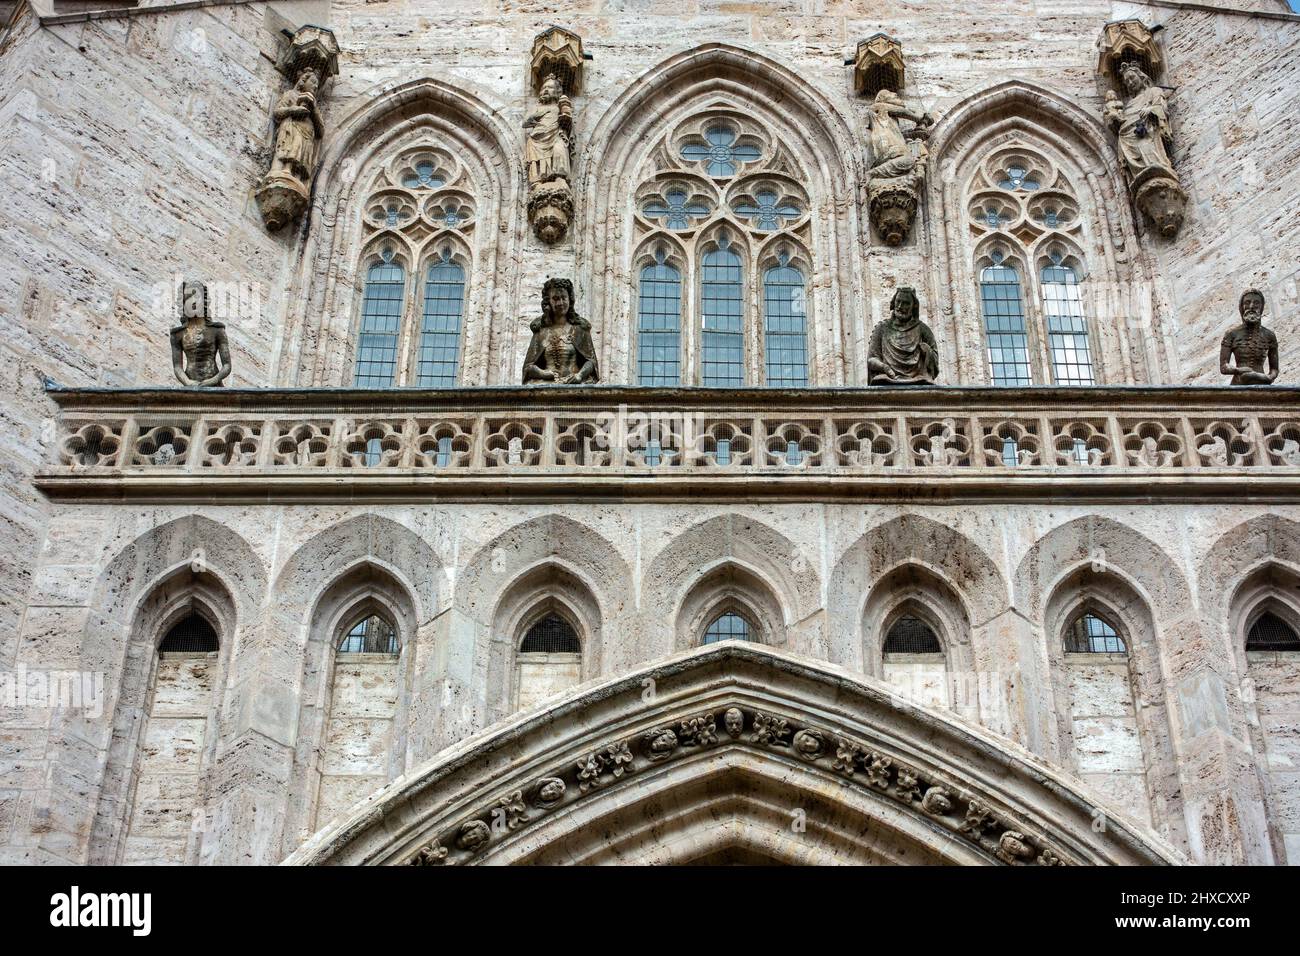 Parapeto sobre el portal sur de la Iglesia de Santa María La fila inferior muestra al emperador Carlos IV, su cuarta esposa Isabel de Pomerania y dos de sus hijos. La fila superior representa la Adoración de los Magos. Foto de stock